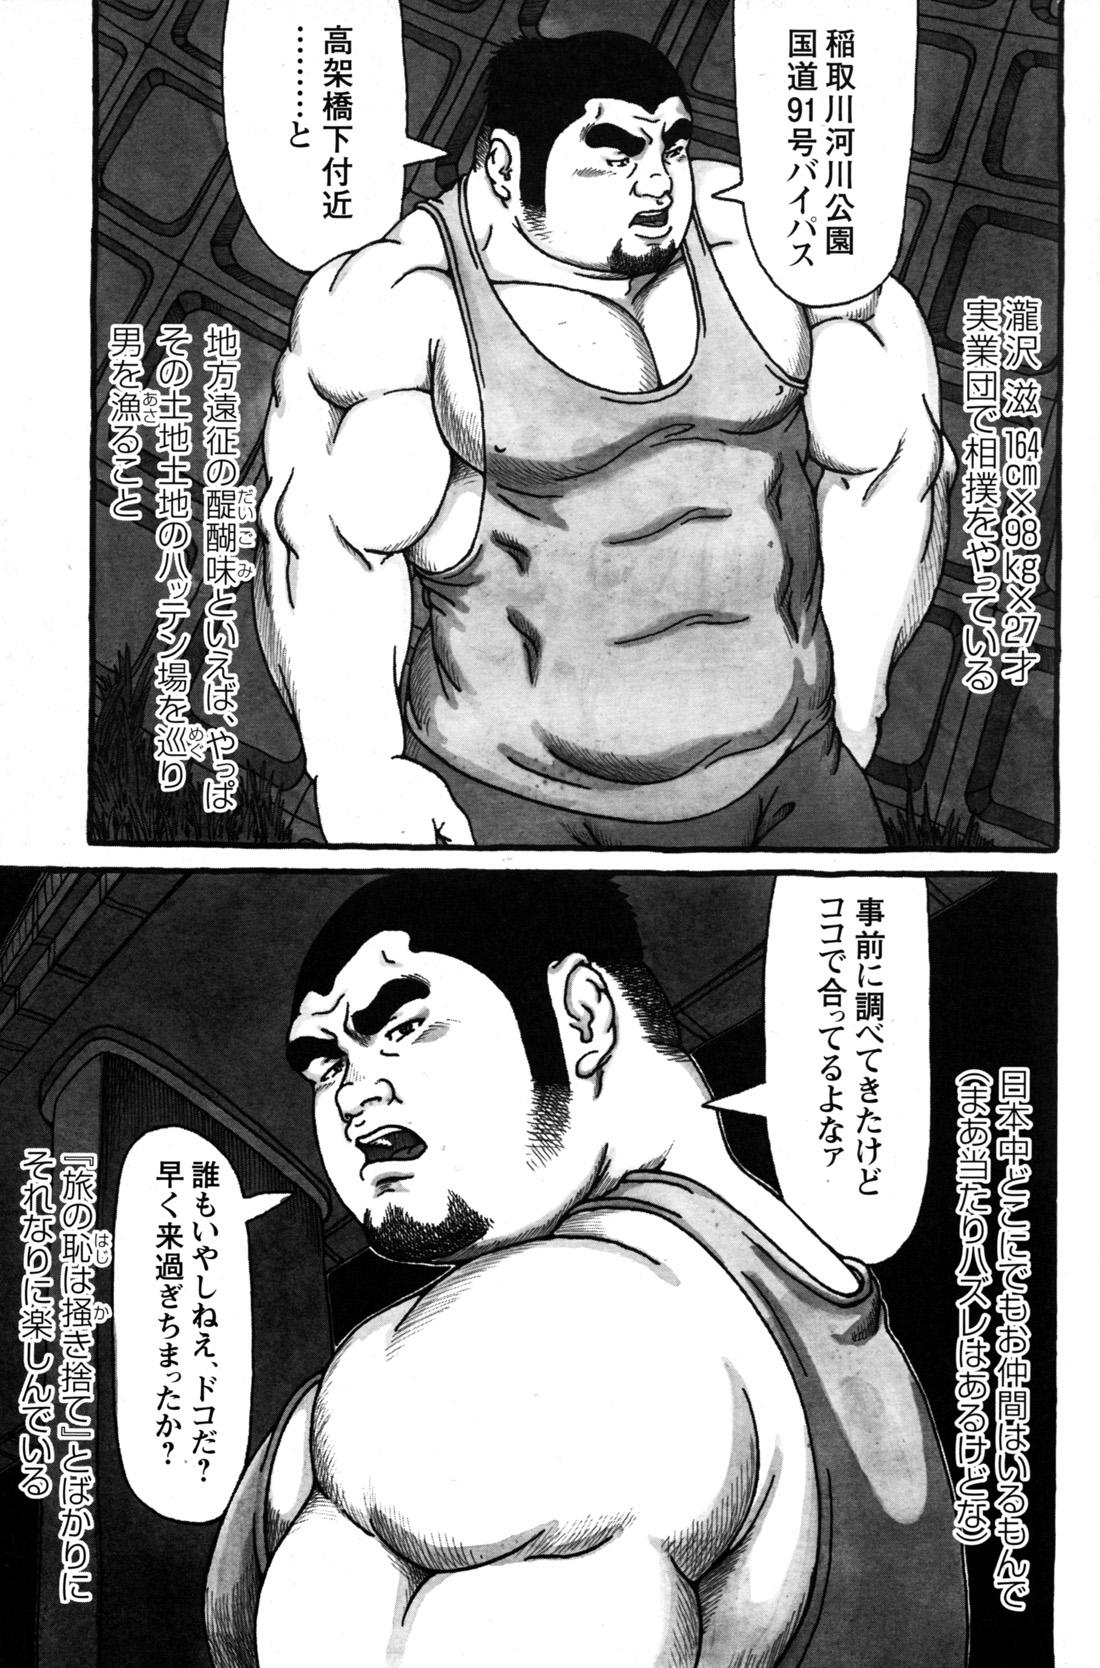 Comic G-men Gaho No.09 Gacchibi Zeme 147